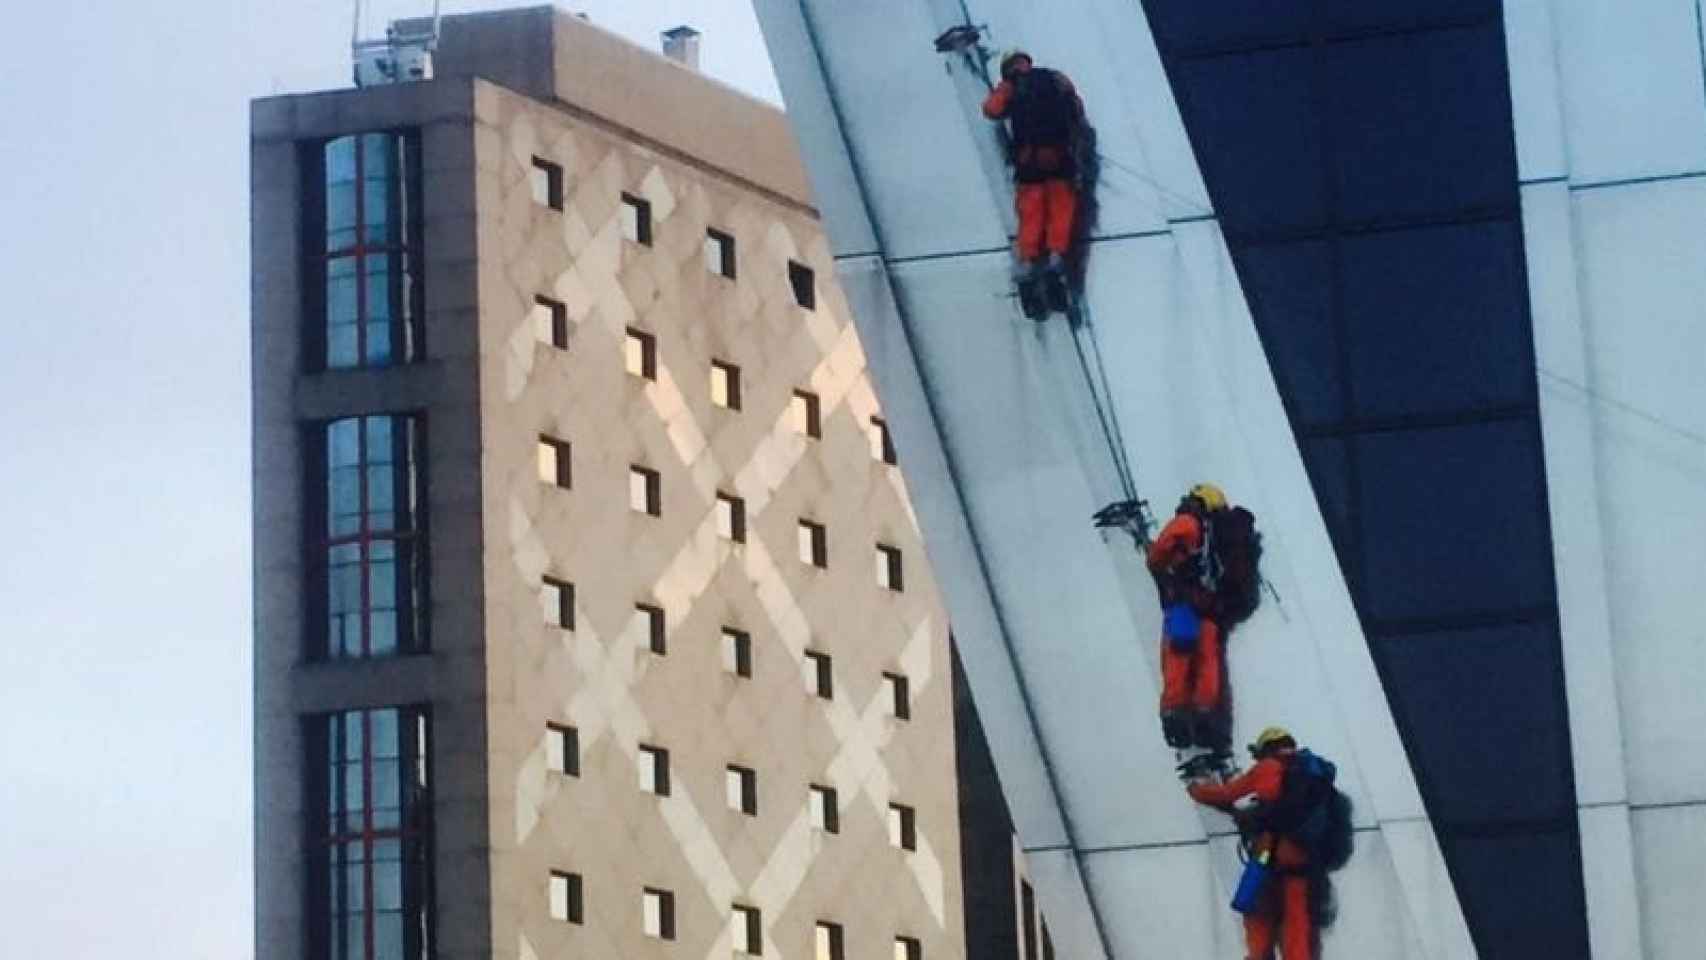 Activistas de Greenpeace escalando una de las torres KIO de Madrid.